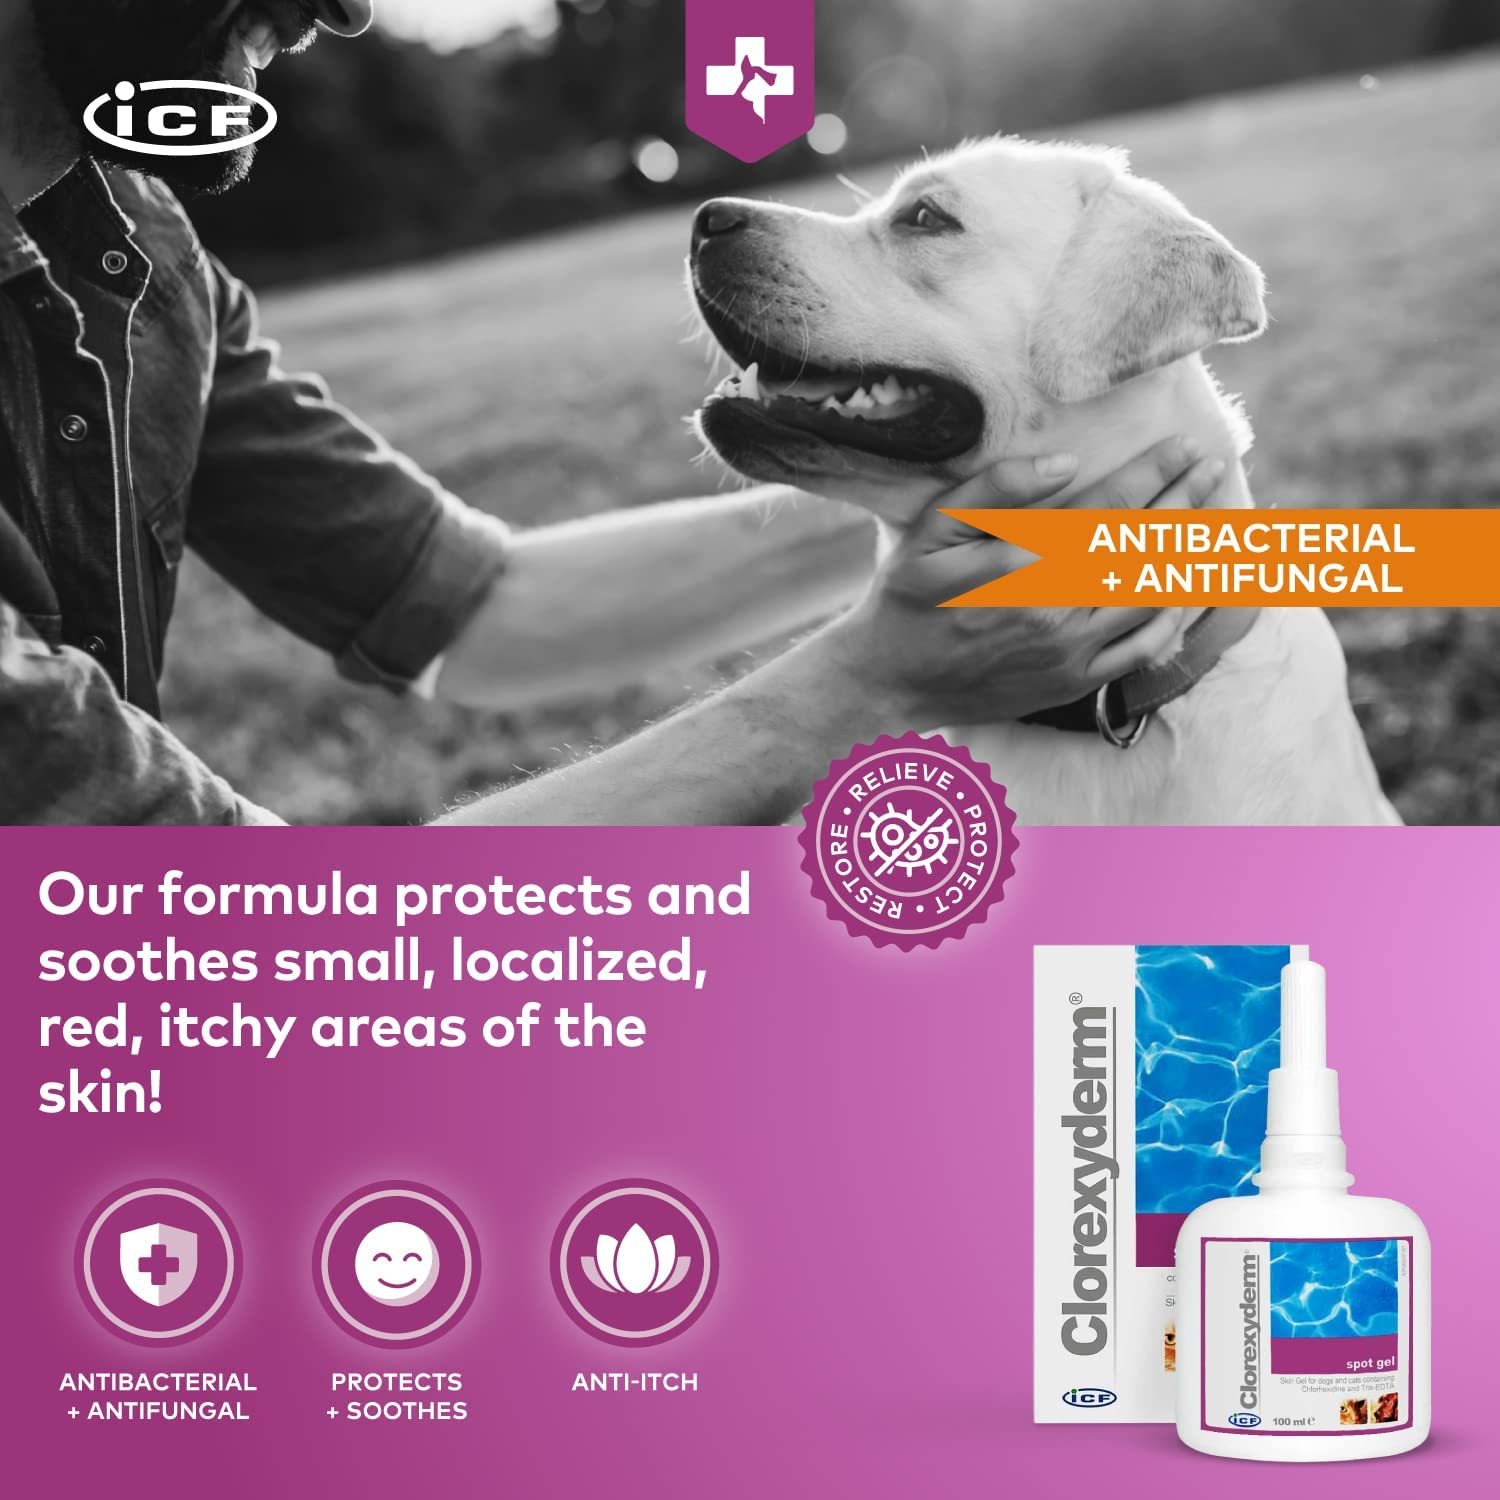 Clorexyderm Spot Gel - Gel pentru protecția pielii pentru câini și pisici - zoom